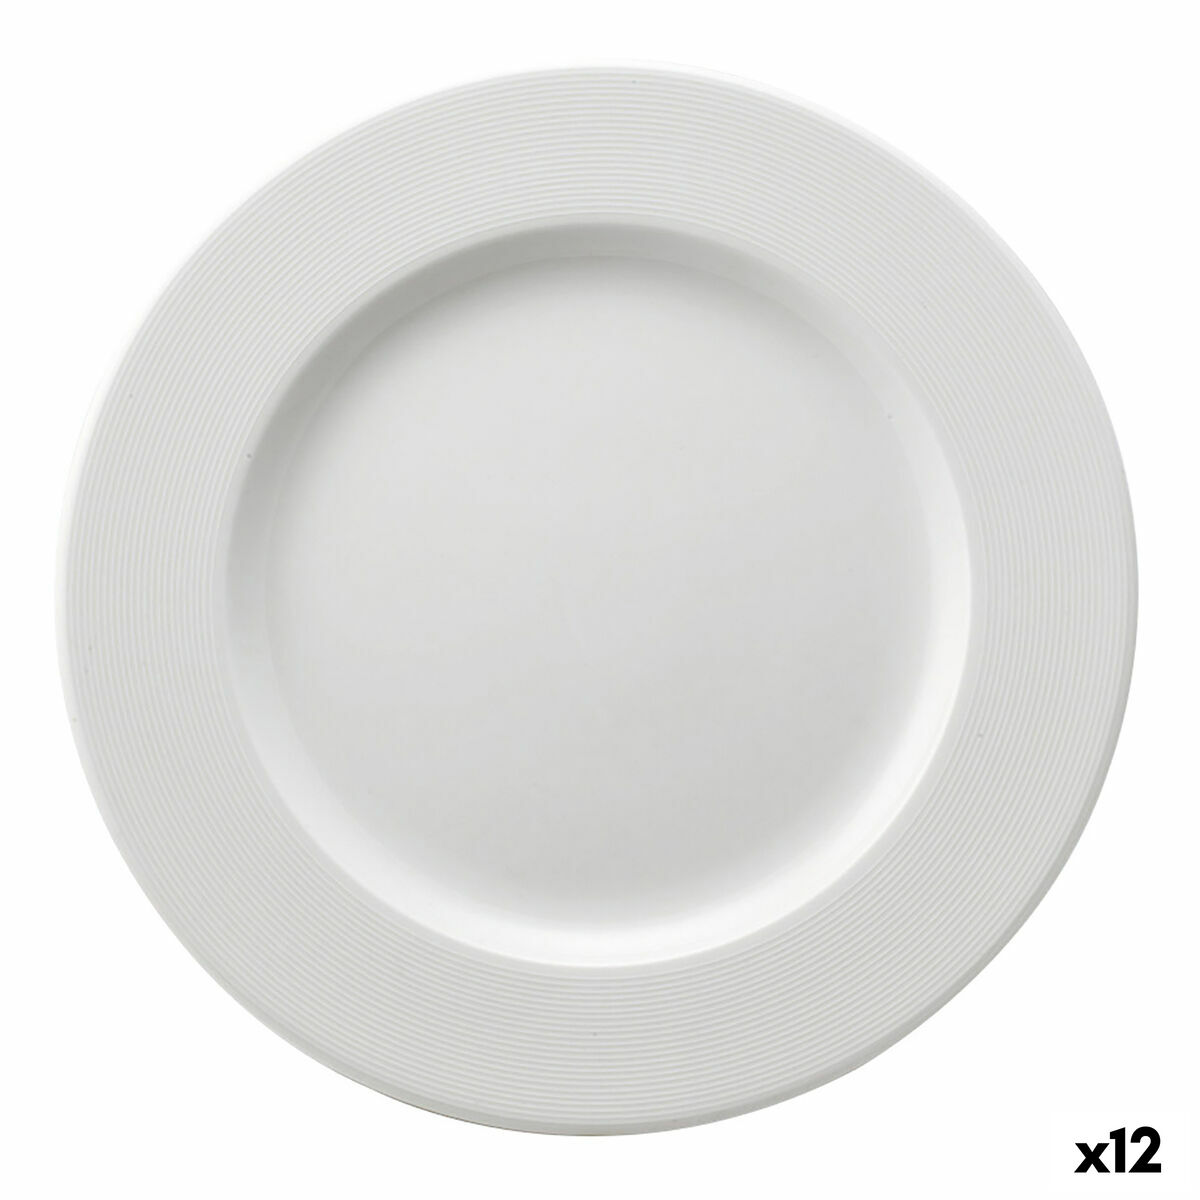 Piatto da Dolce Ariane Orba Ceramica Bianco Ø 21 cm (12 Unità)